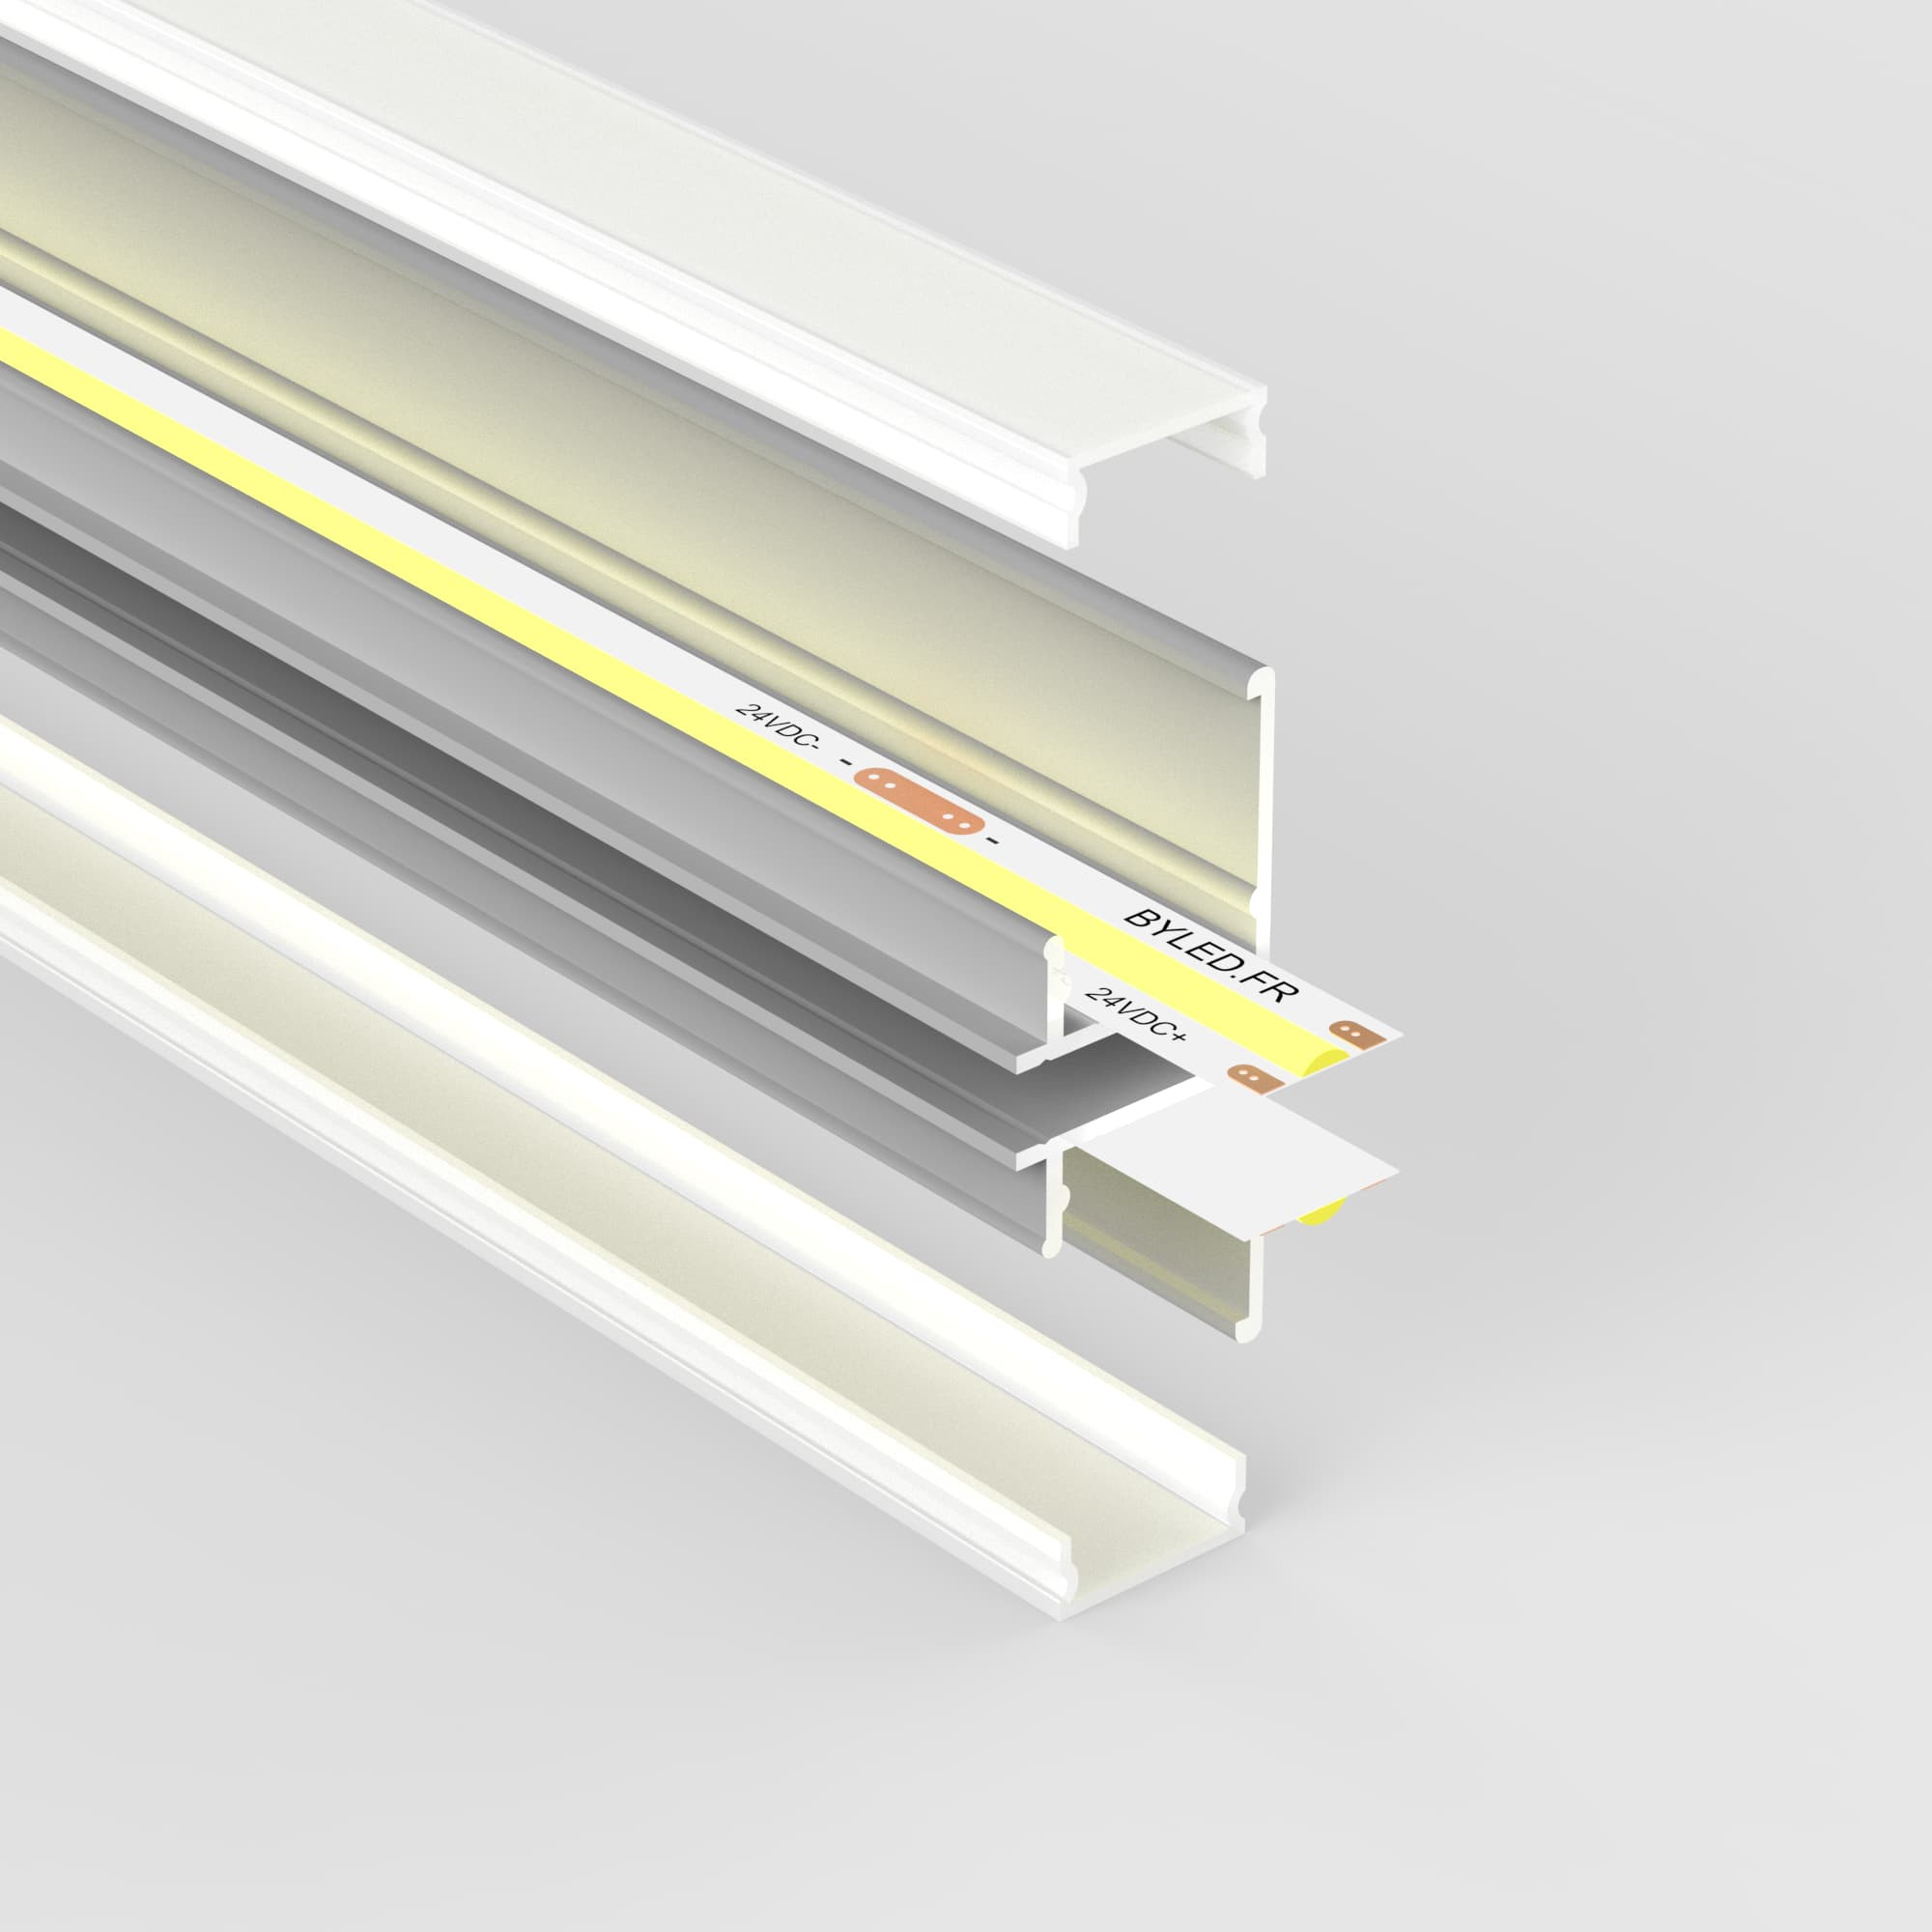 KIT profilé LED pour la création de cadre et contours lumineux